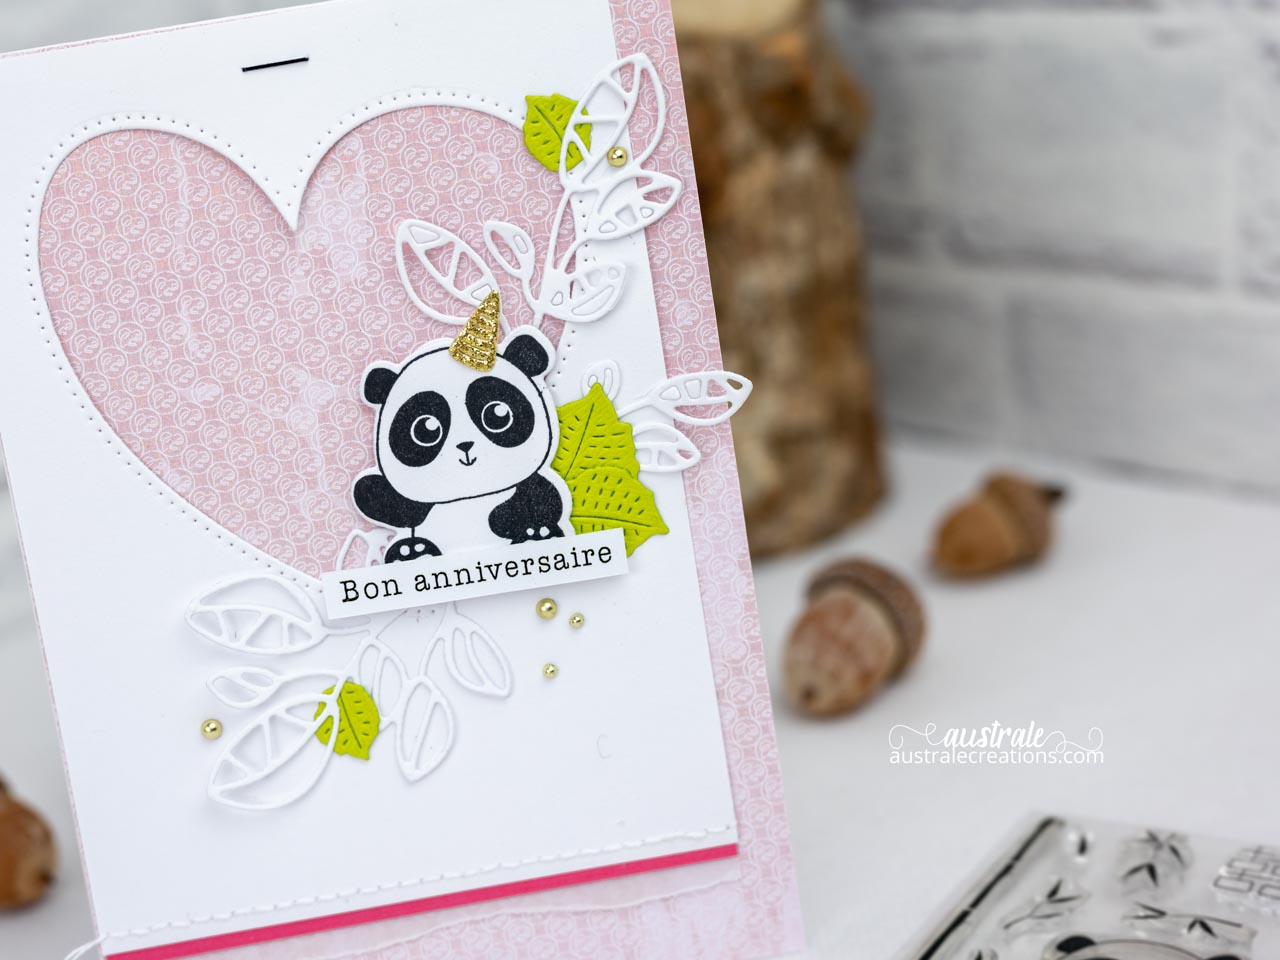 Création d'une carte d'anniversaire pour petite fille avec un adorable panda de 4enscrap, feuillages, coeur et fond rose.